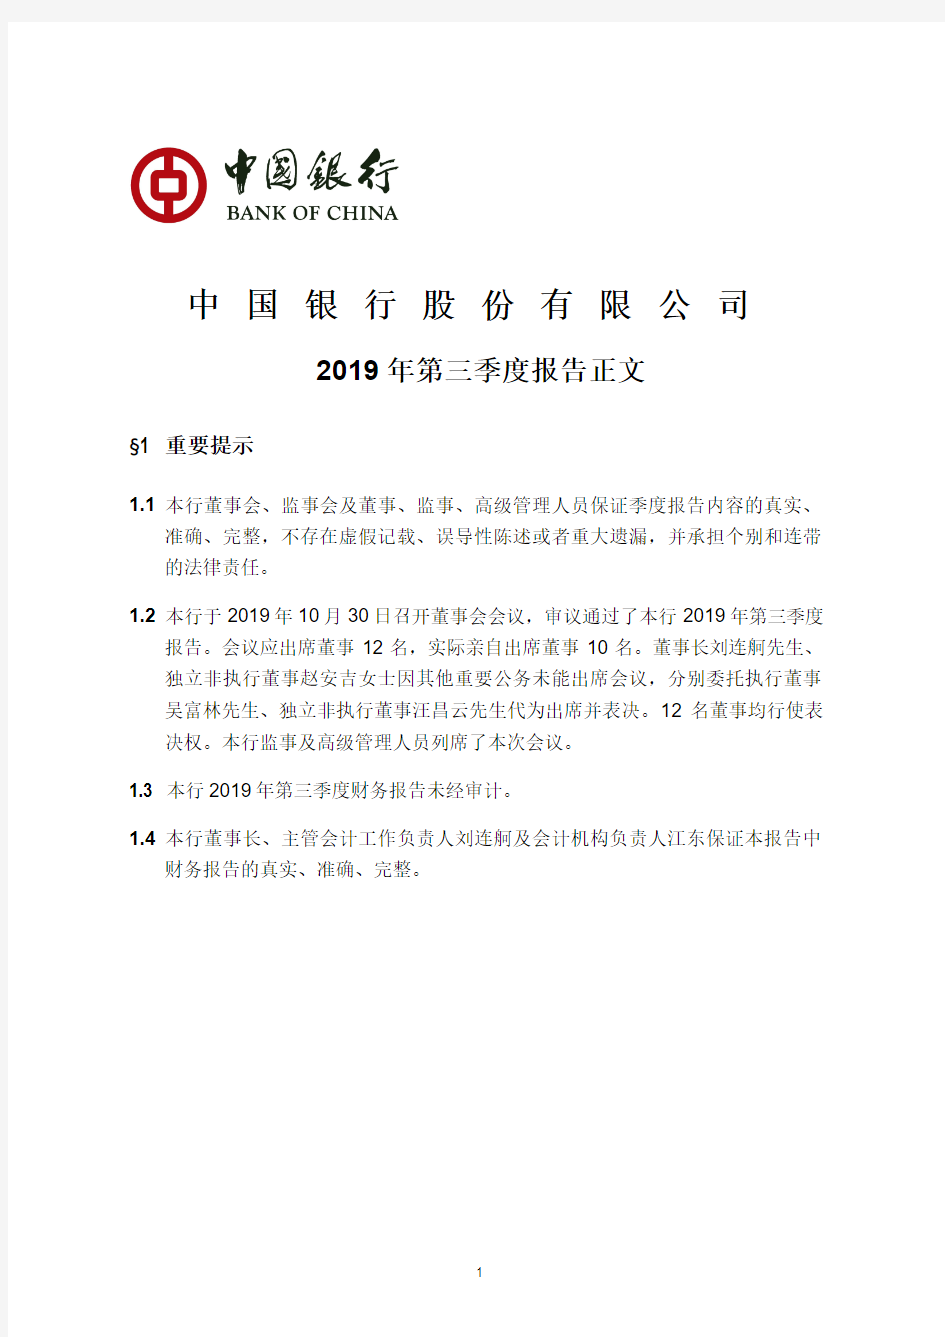 中国银行 2019 第三季度财报